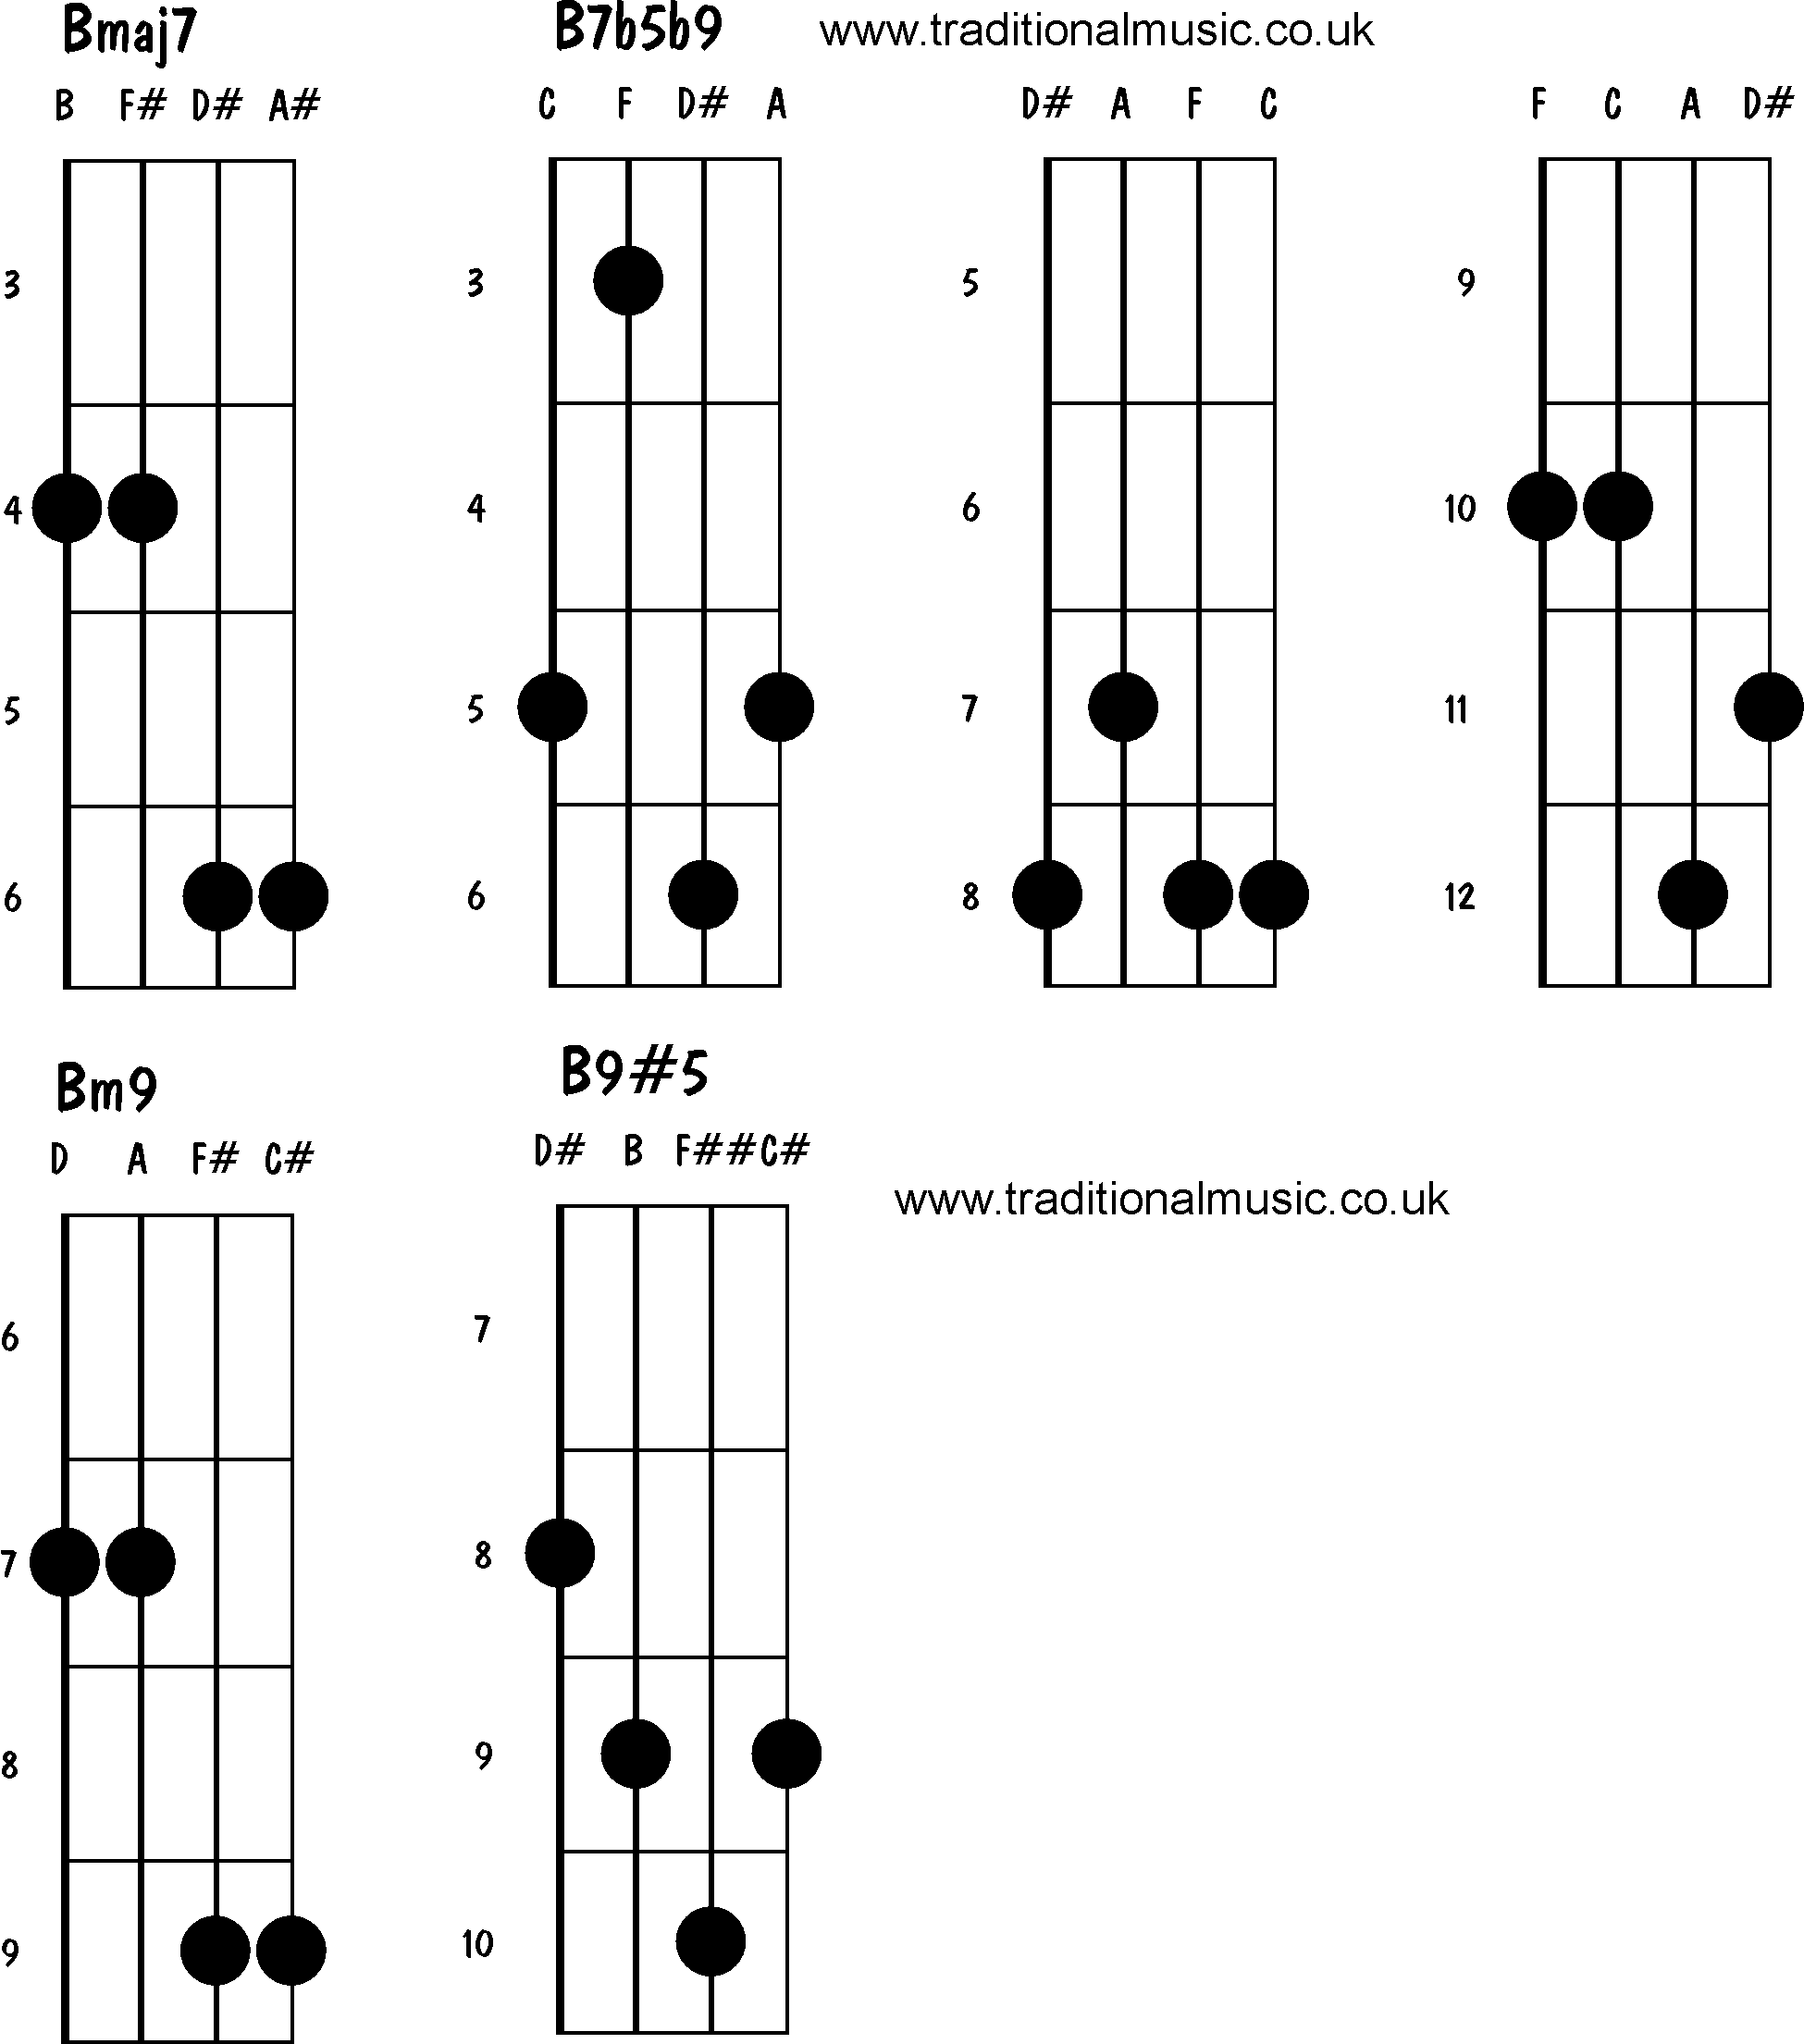 Advanced mandolin chords:Bmaj7, B7b5b9, Bm9, B9#5